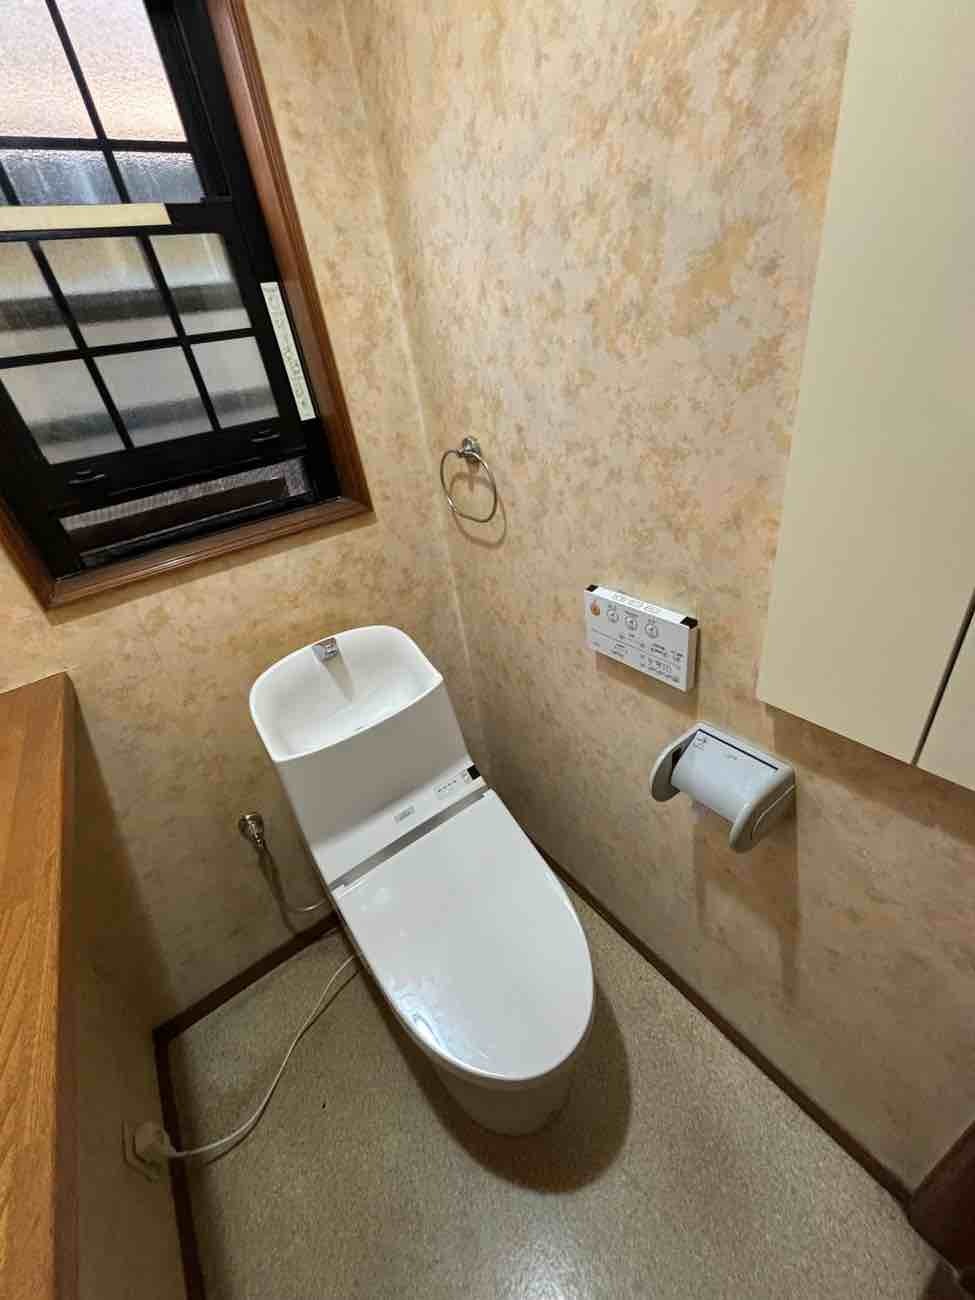 【埼玉県三郷市】U様邸トイレ交換工事が完了しました。TOTO ウォシュレット一体形GG 画像